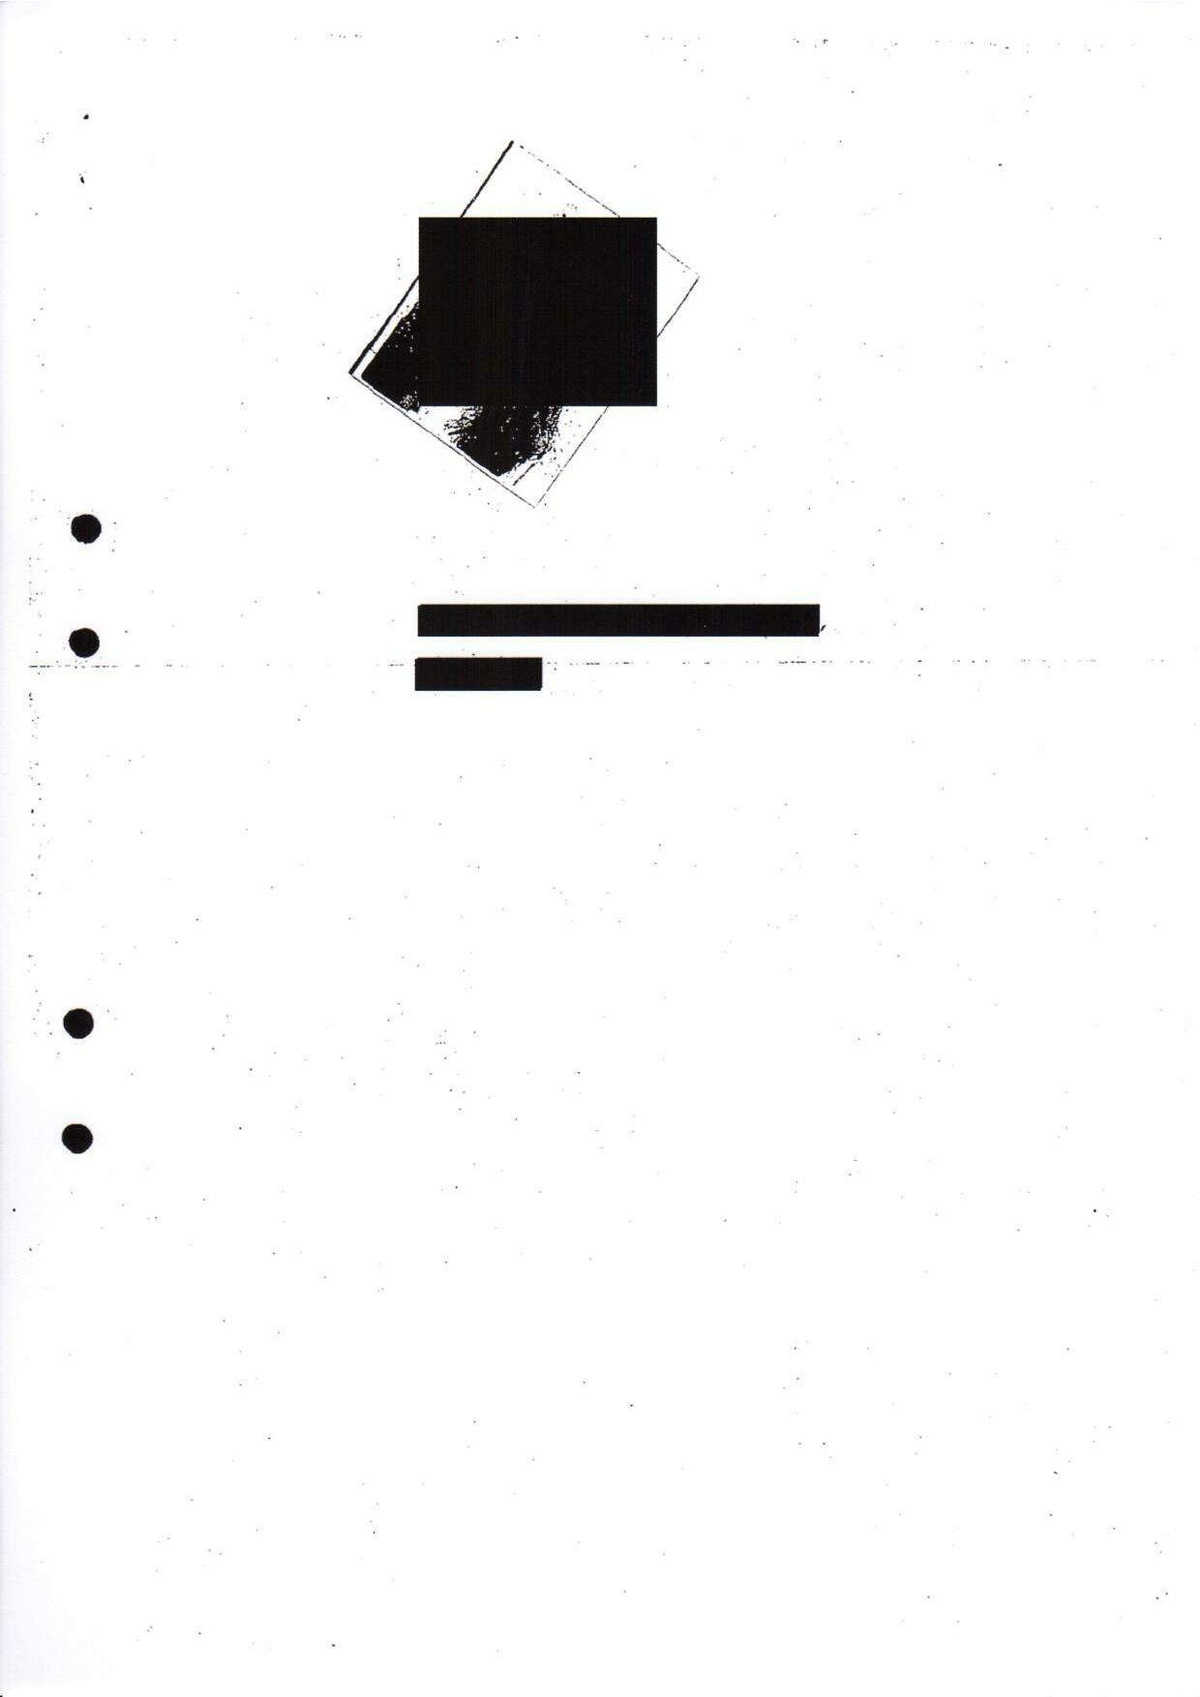 Pol-1997-03-04 D17827-01 Erkännanden Palmemordet.pdf